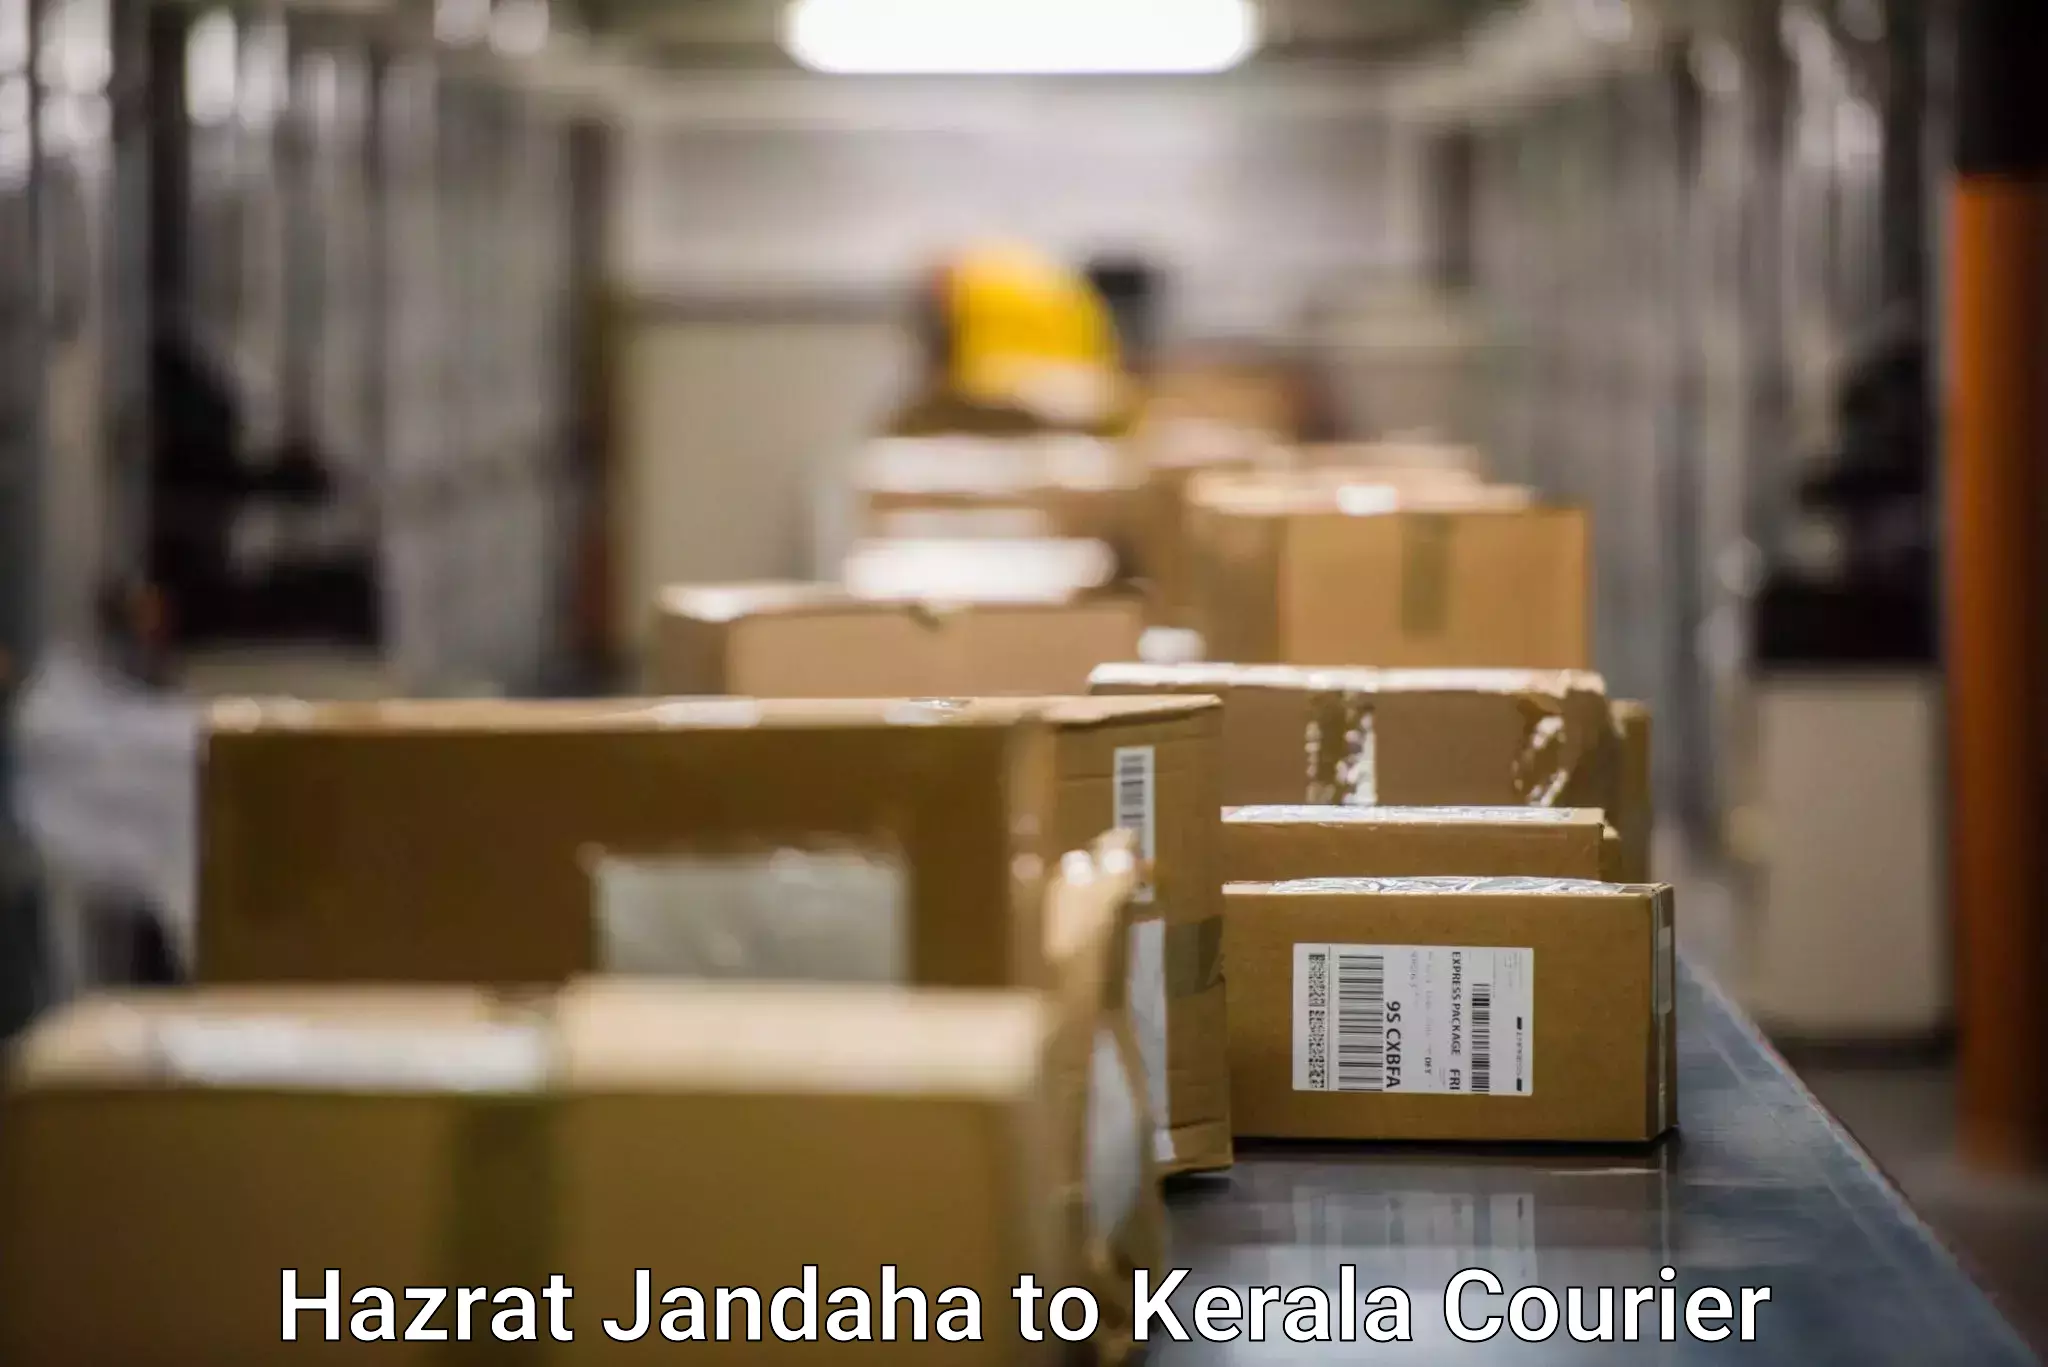 Doorstep delivery service Hazrat Jandaha to Kerala